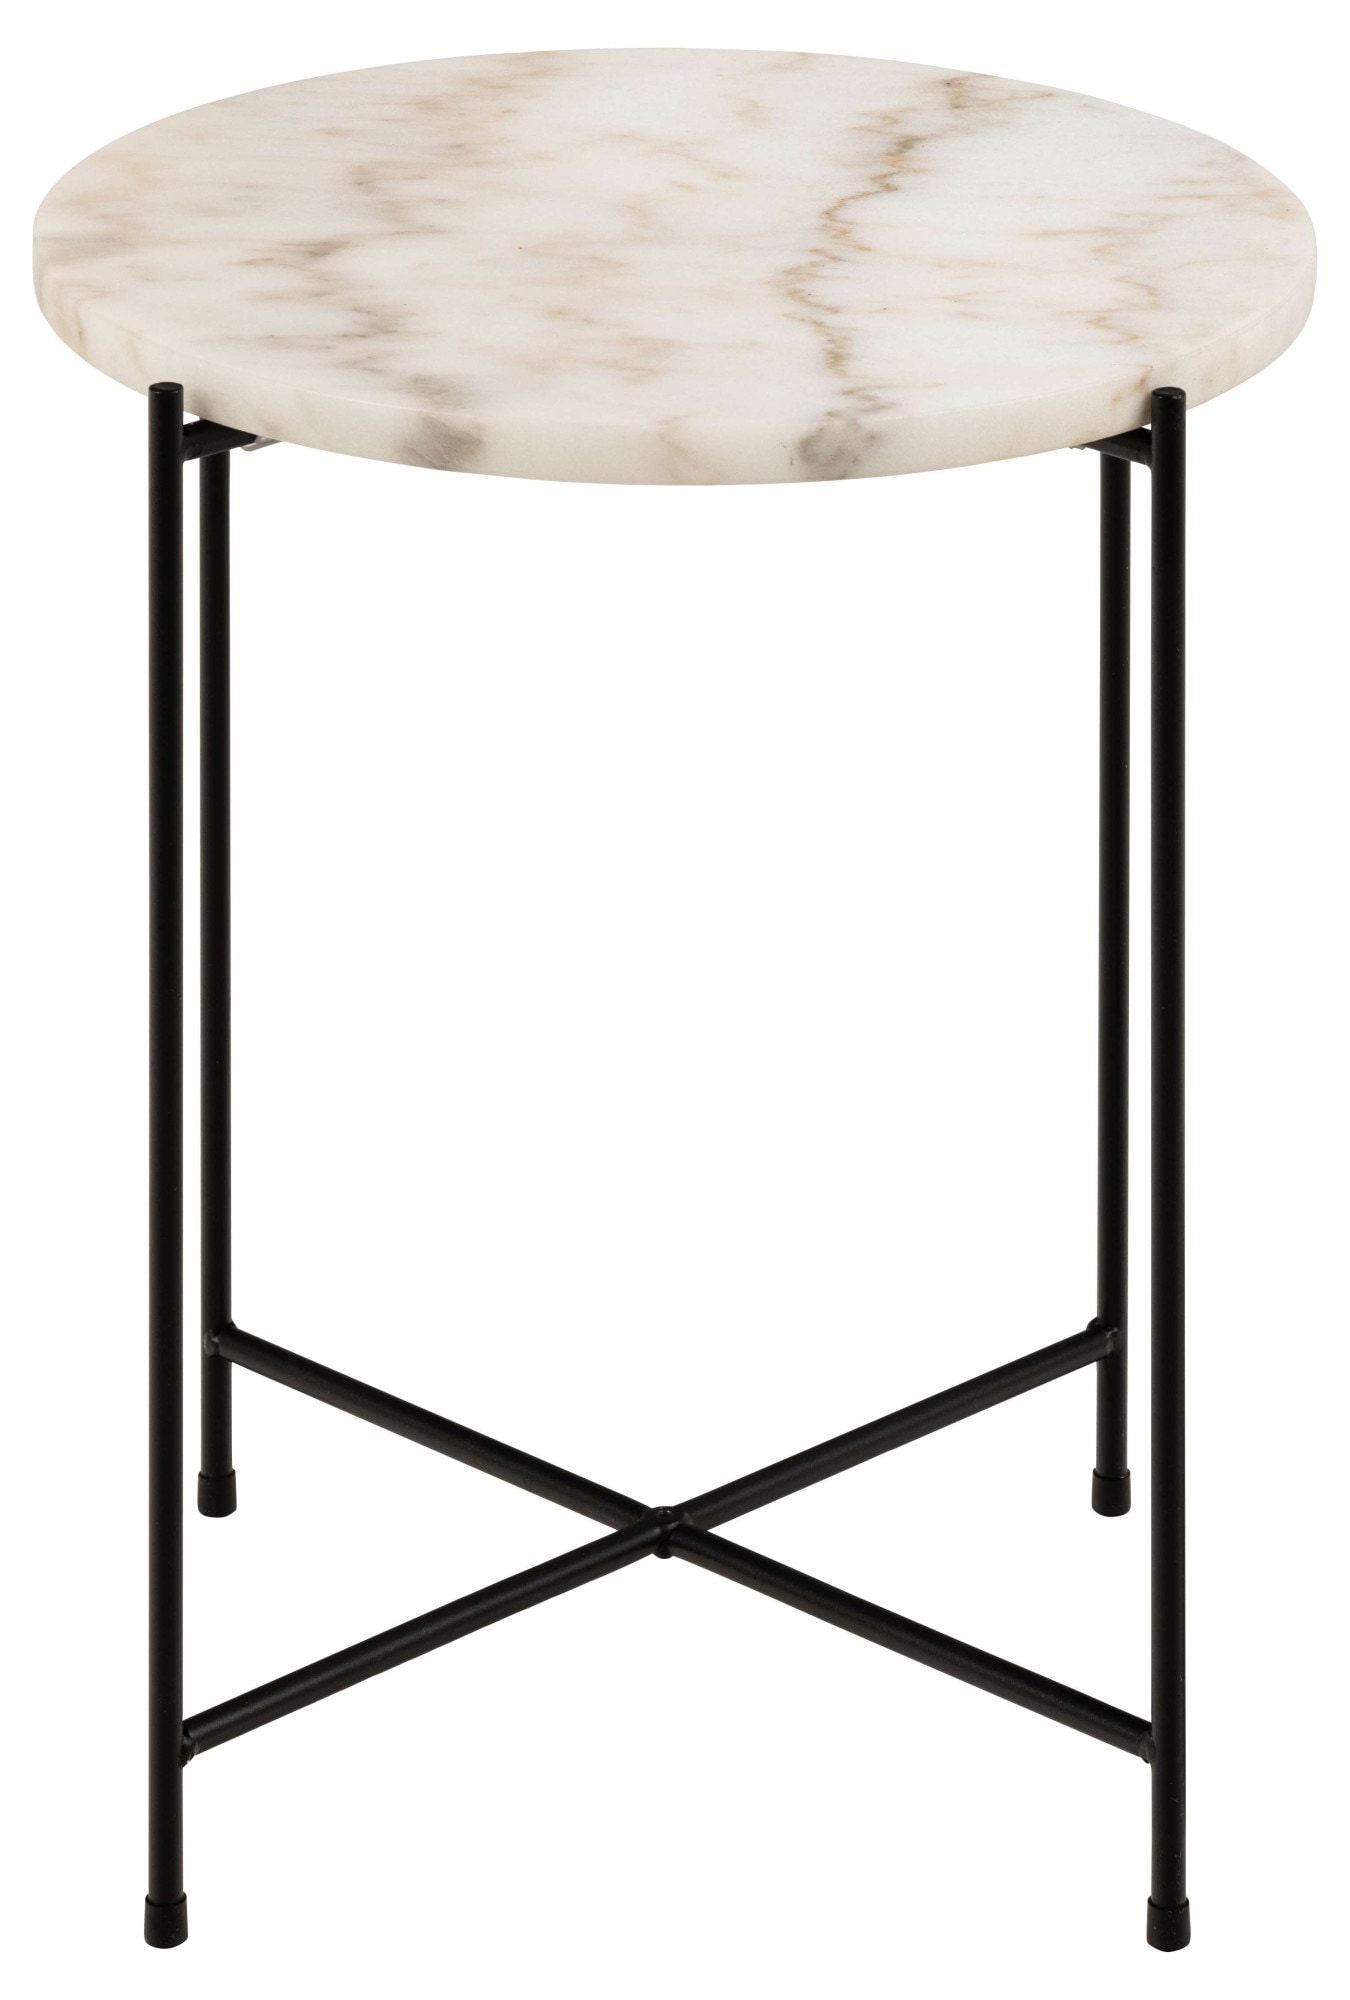 ACTONA GROUP Beistelltisch »Avila«, Ecktisch, rund, Tischplatte aus Marmorstein, T: 52 cm